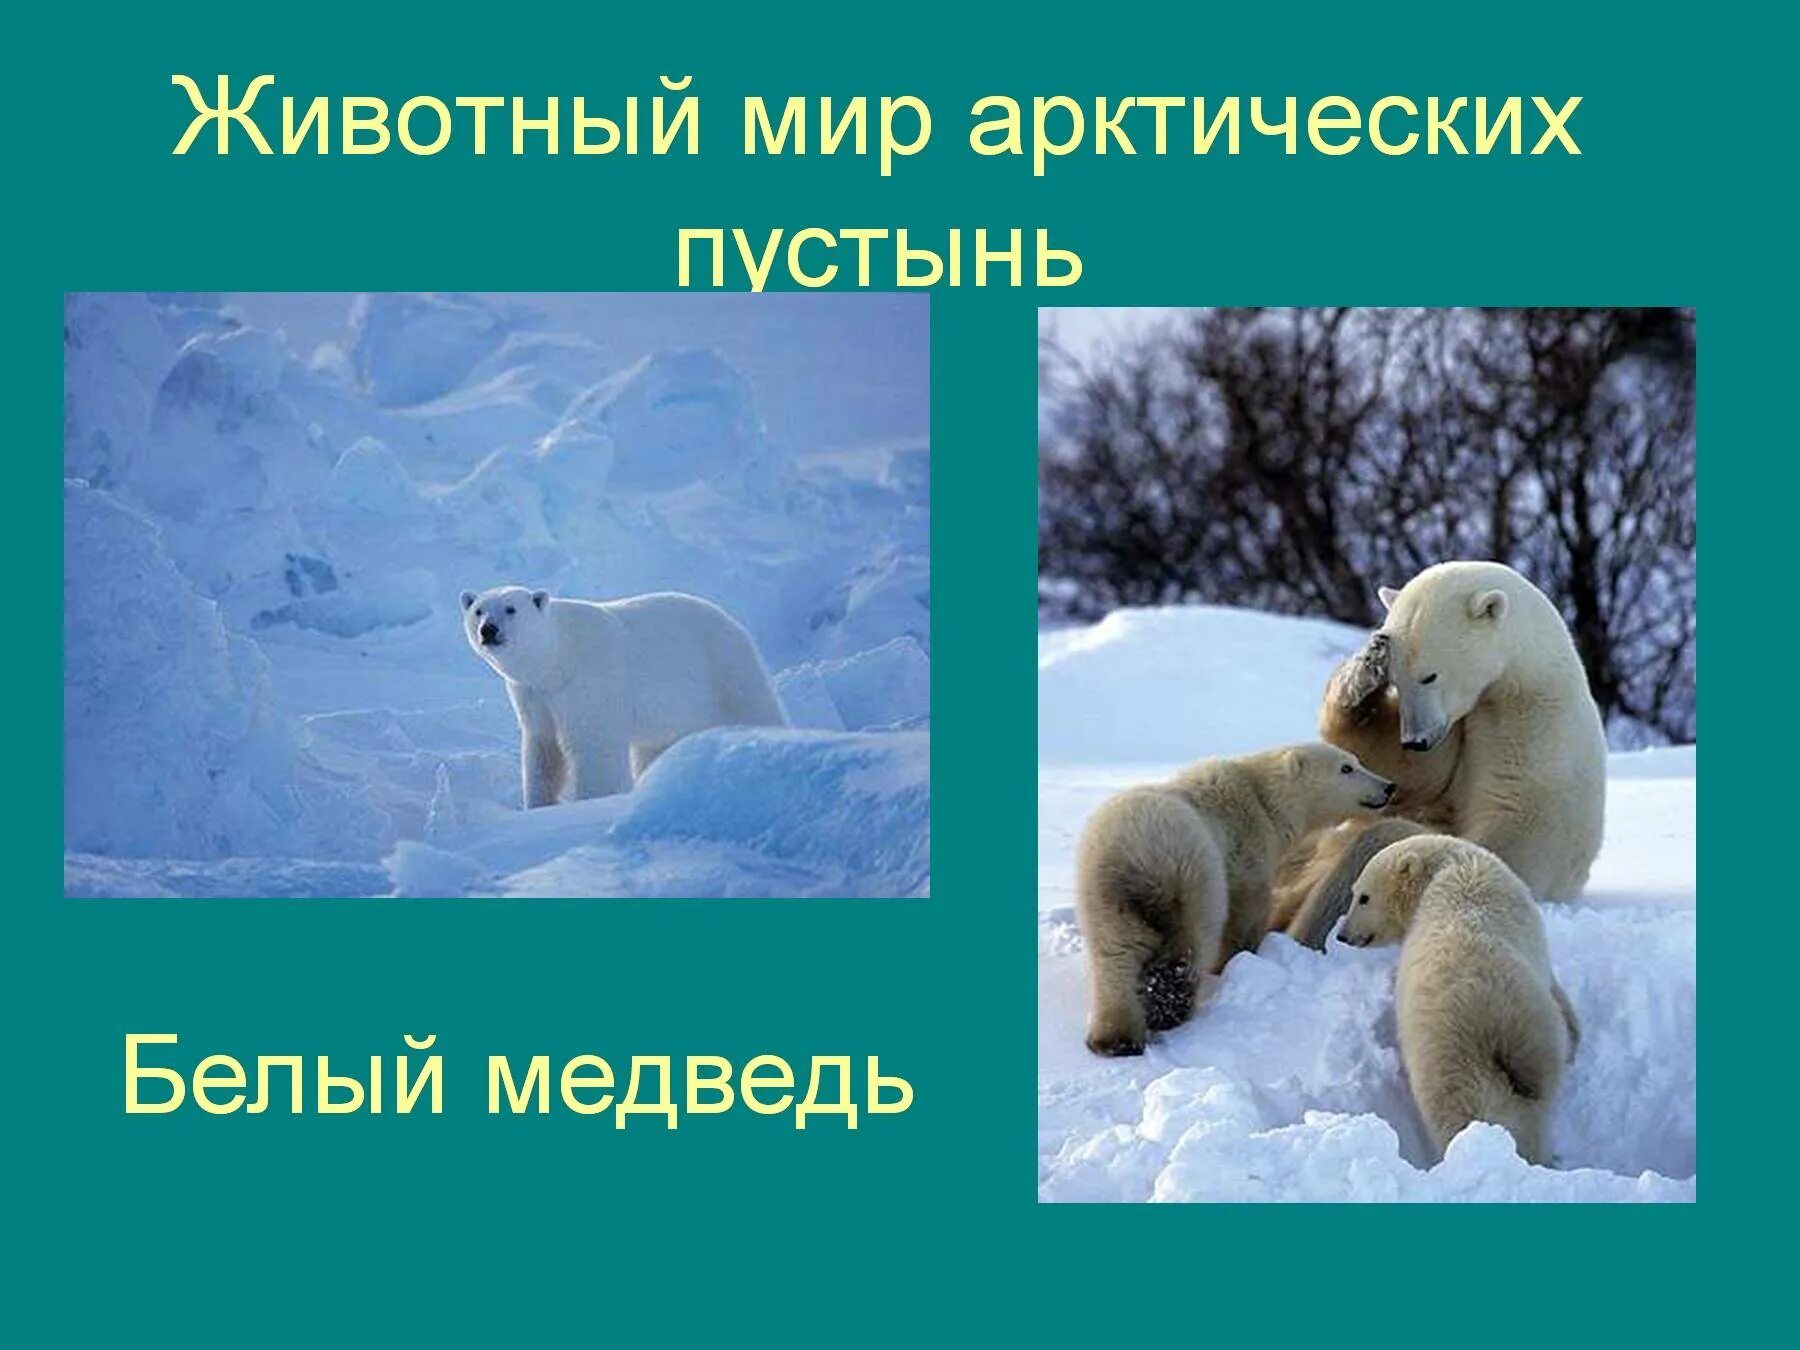 Определите животных арктических пустынь. Животный миарктических пустынь. Животный мир арктических пустынь. Животный мир арктической пустыни. Арктические пустыни животные.